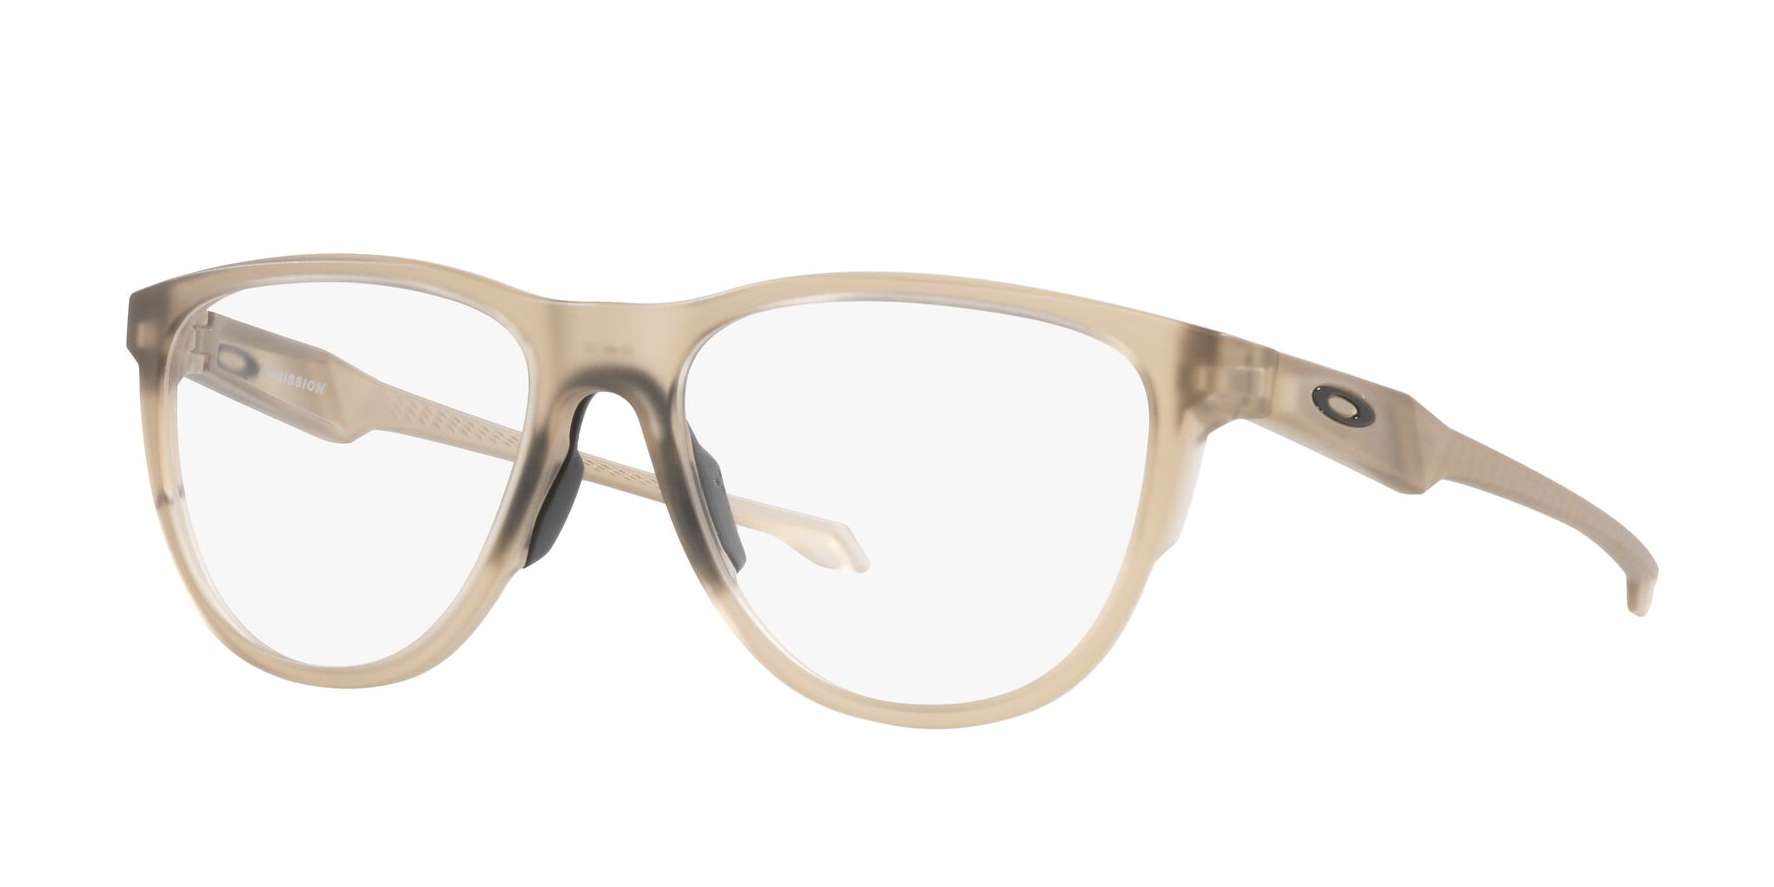 Oakley briller - Admission fra Oakley - Transparet - Plast - wayfarer - large